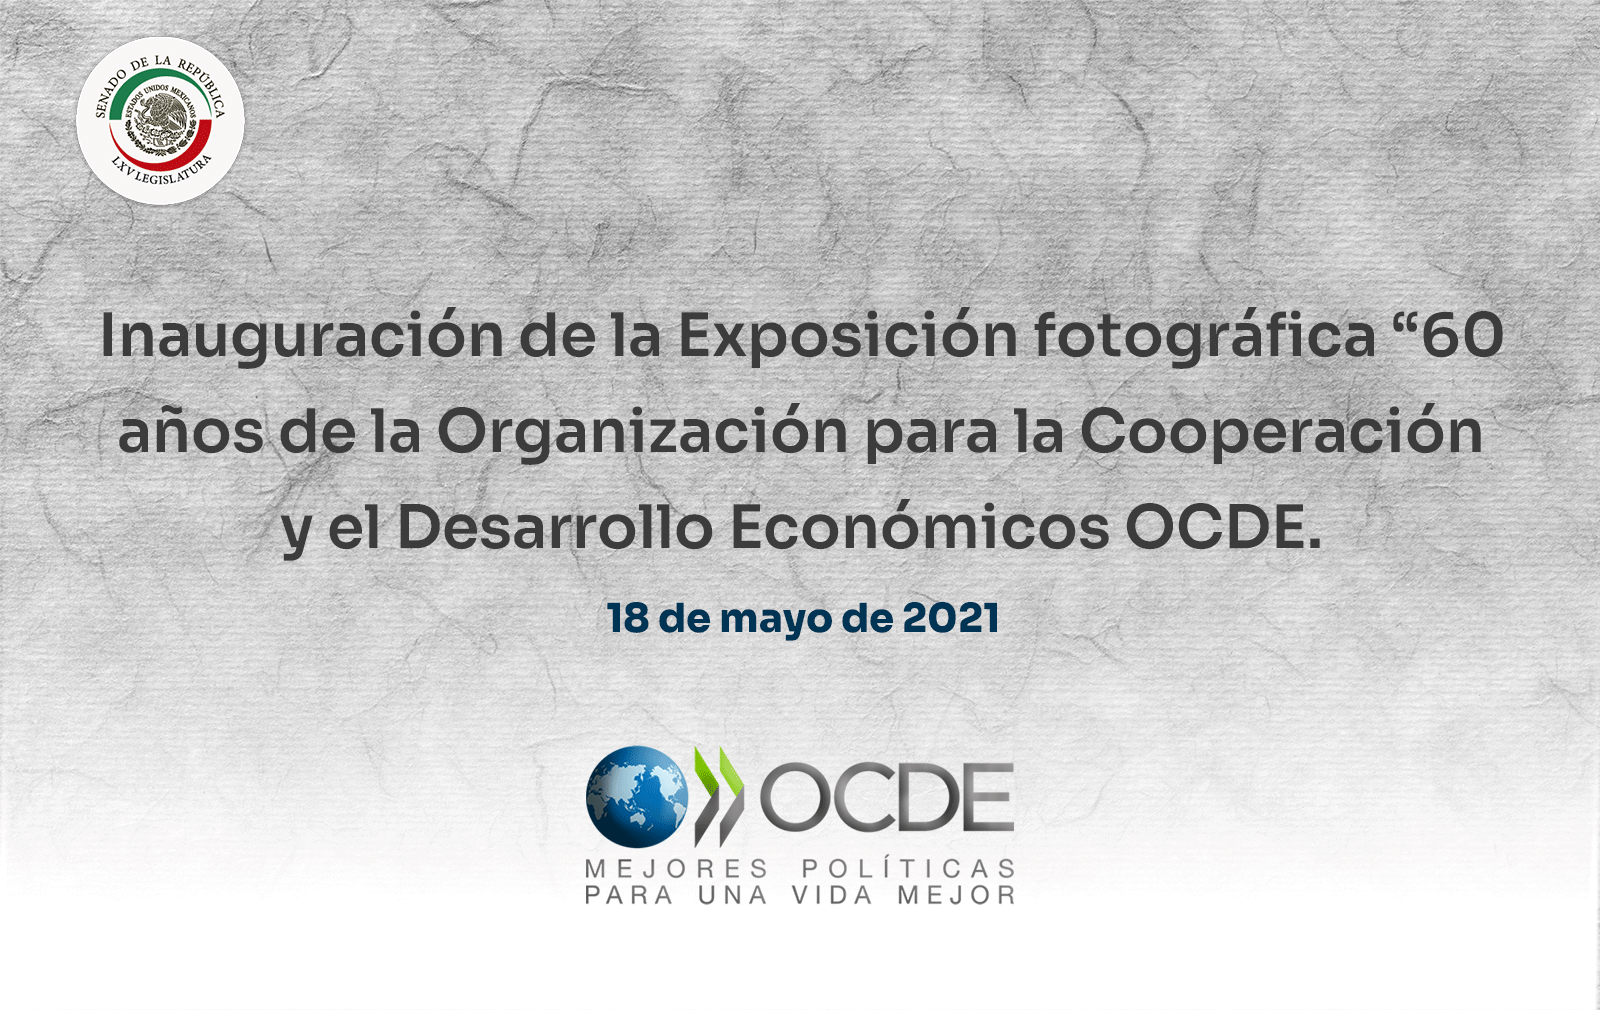 Inauguración de la Exposición fotográfica “60 años de la Organización para la Cooperación y el Desarrollo Económicos OCDE. 18 de mayo de 2021